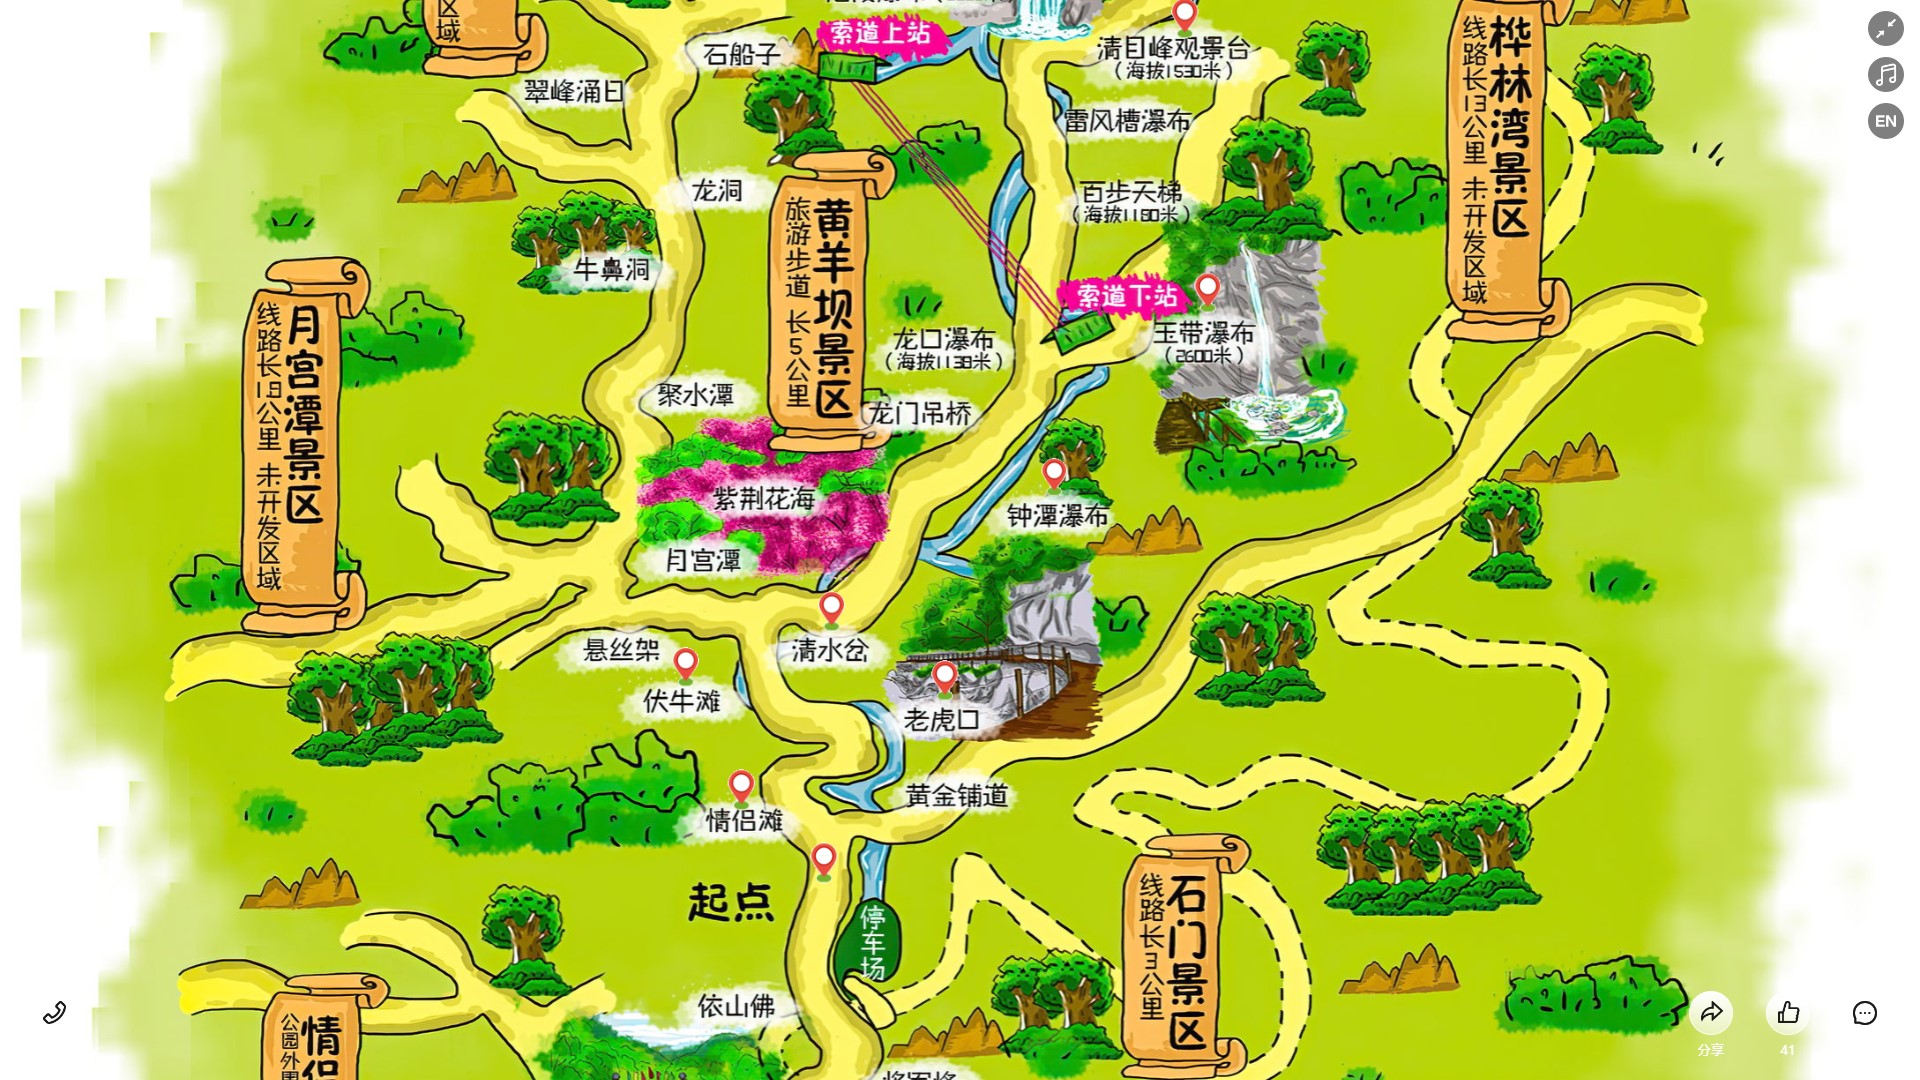 隆广镇景区导览系统